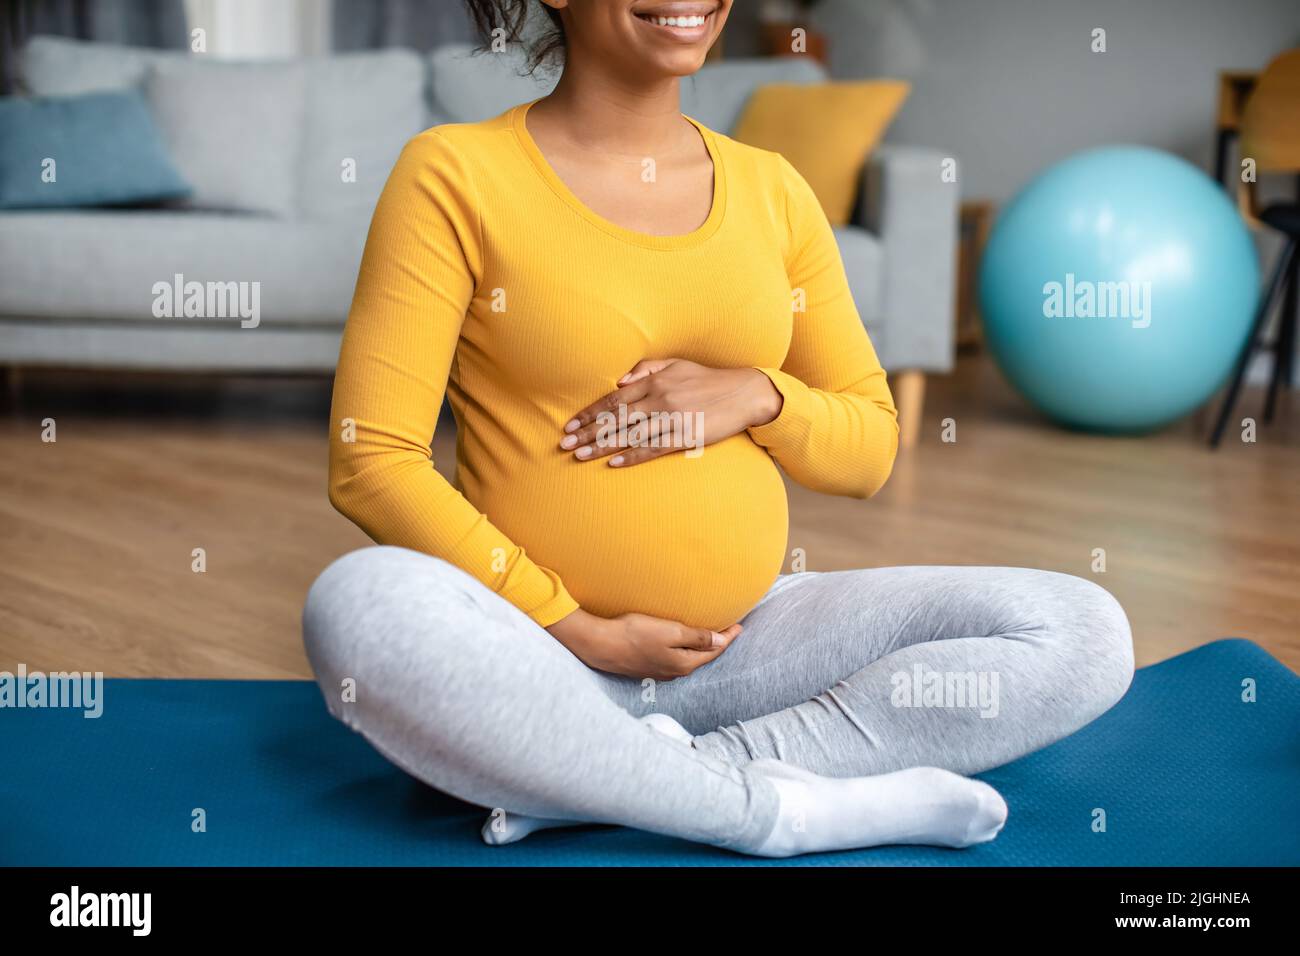 Soins du corps et entraînement. Souriante jeune femme enceinte noire touche le gros ventre, sent le mouvement de bébé Banque D'Images